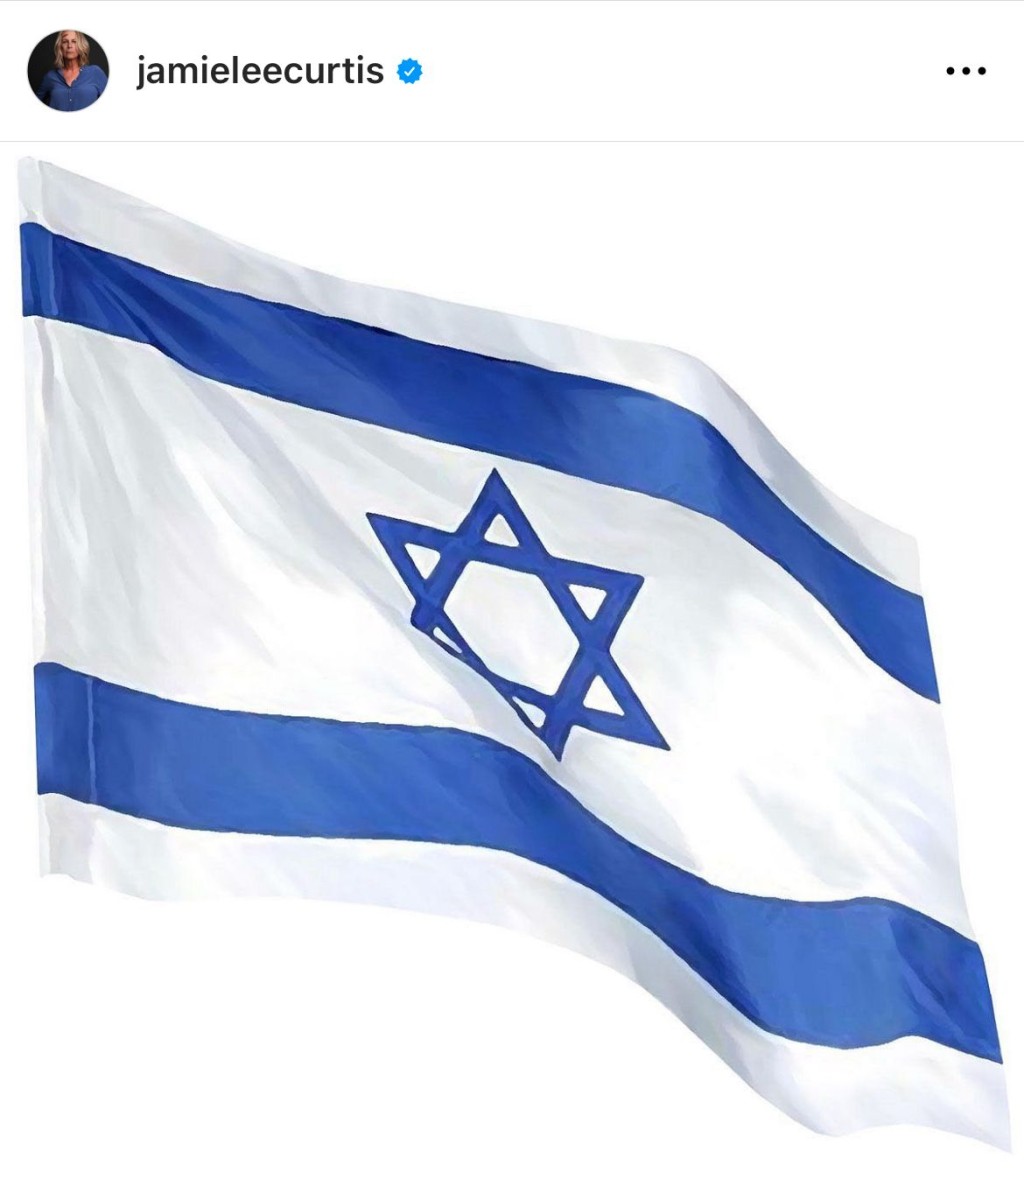 珍美李亦上載以色列國旗。